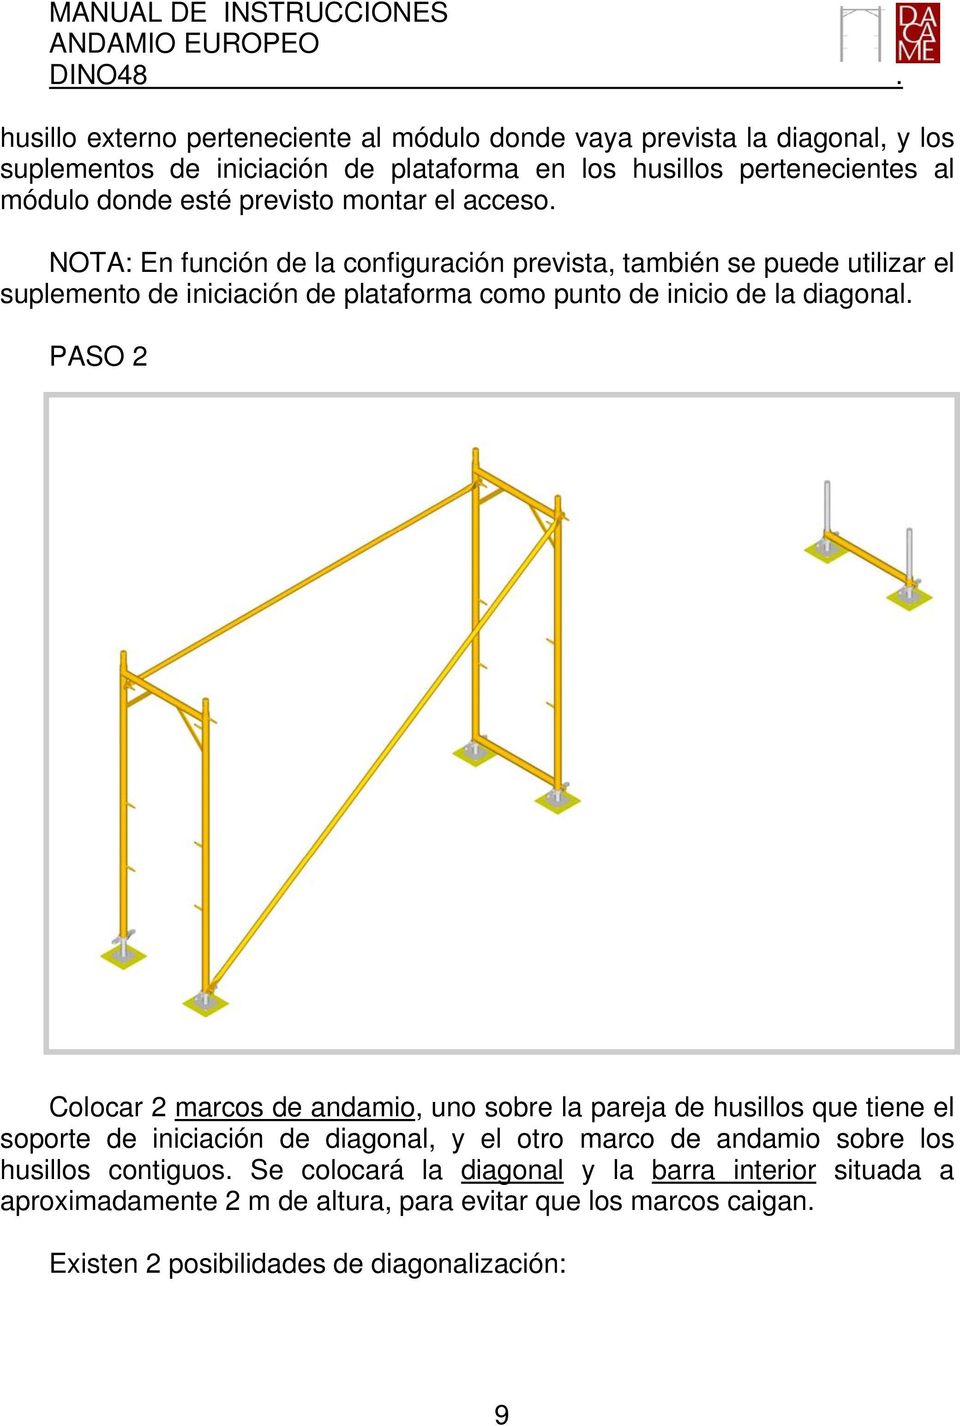 NOTA: En función de la configuración prevista, también se puede utilizar el suplemento de iniciación de plataforma como punto de inicio de la diagonal.